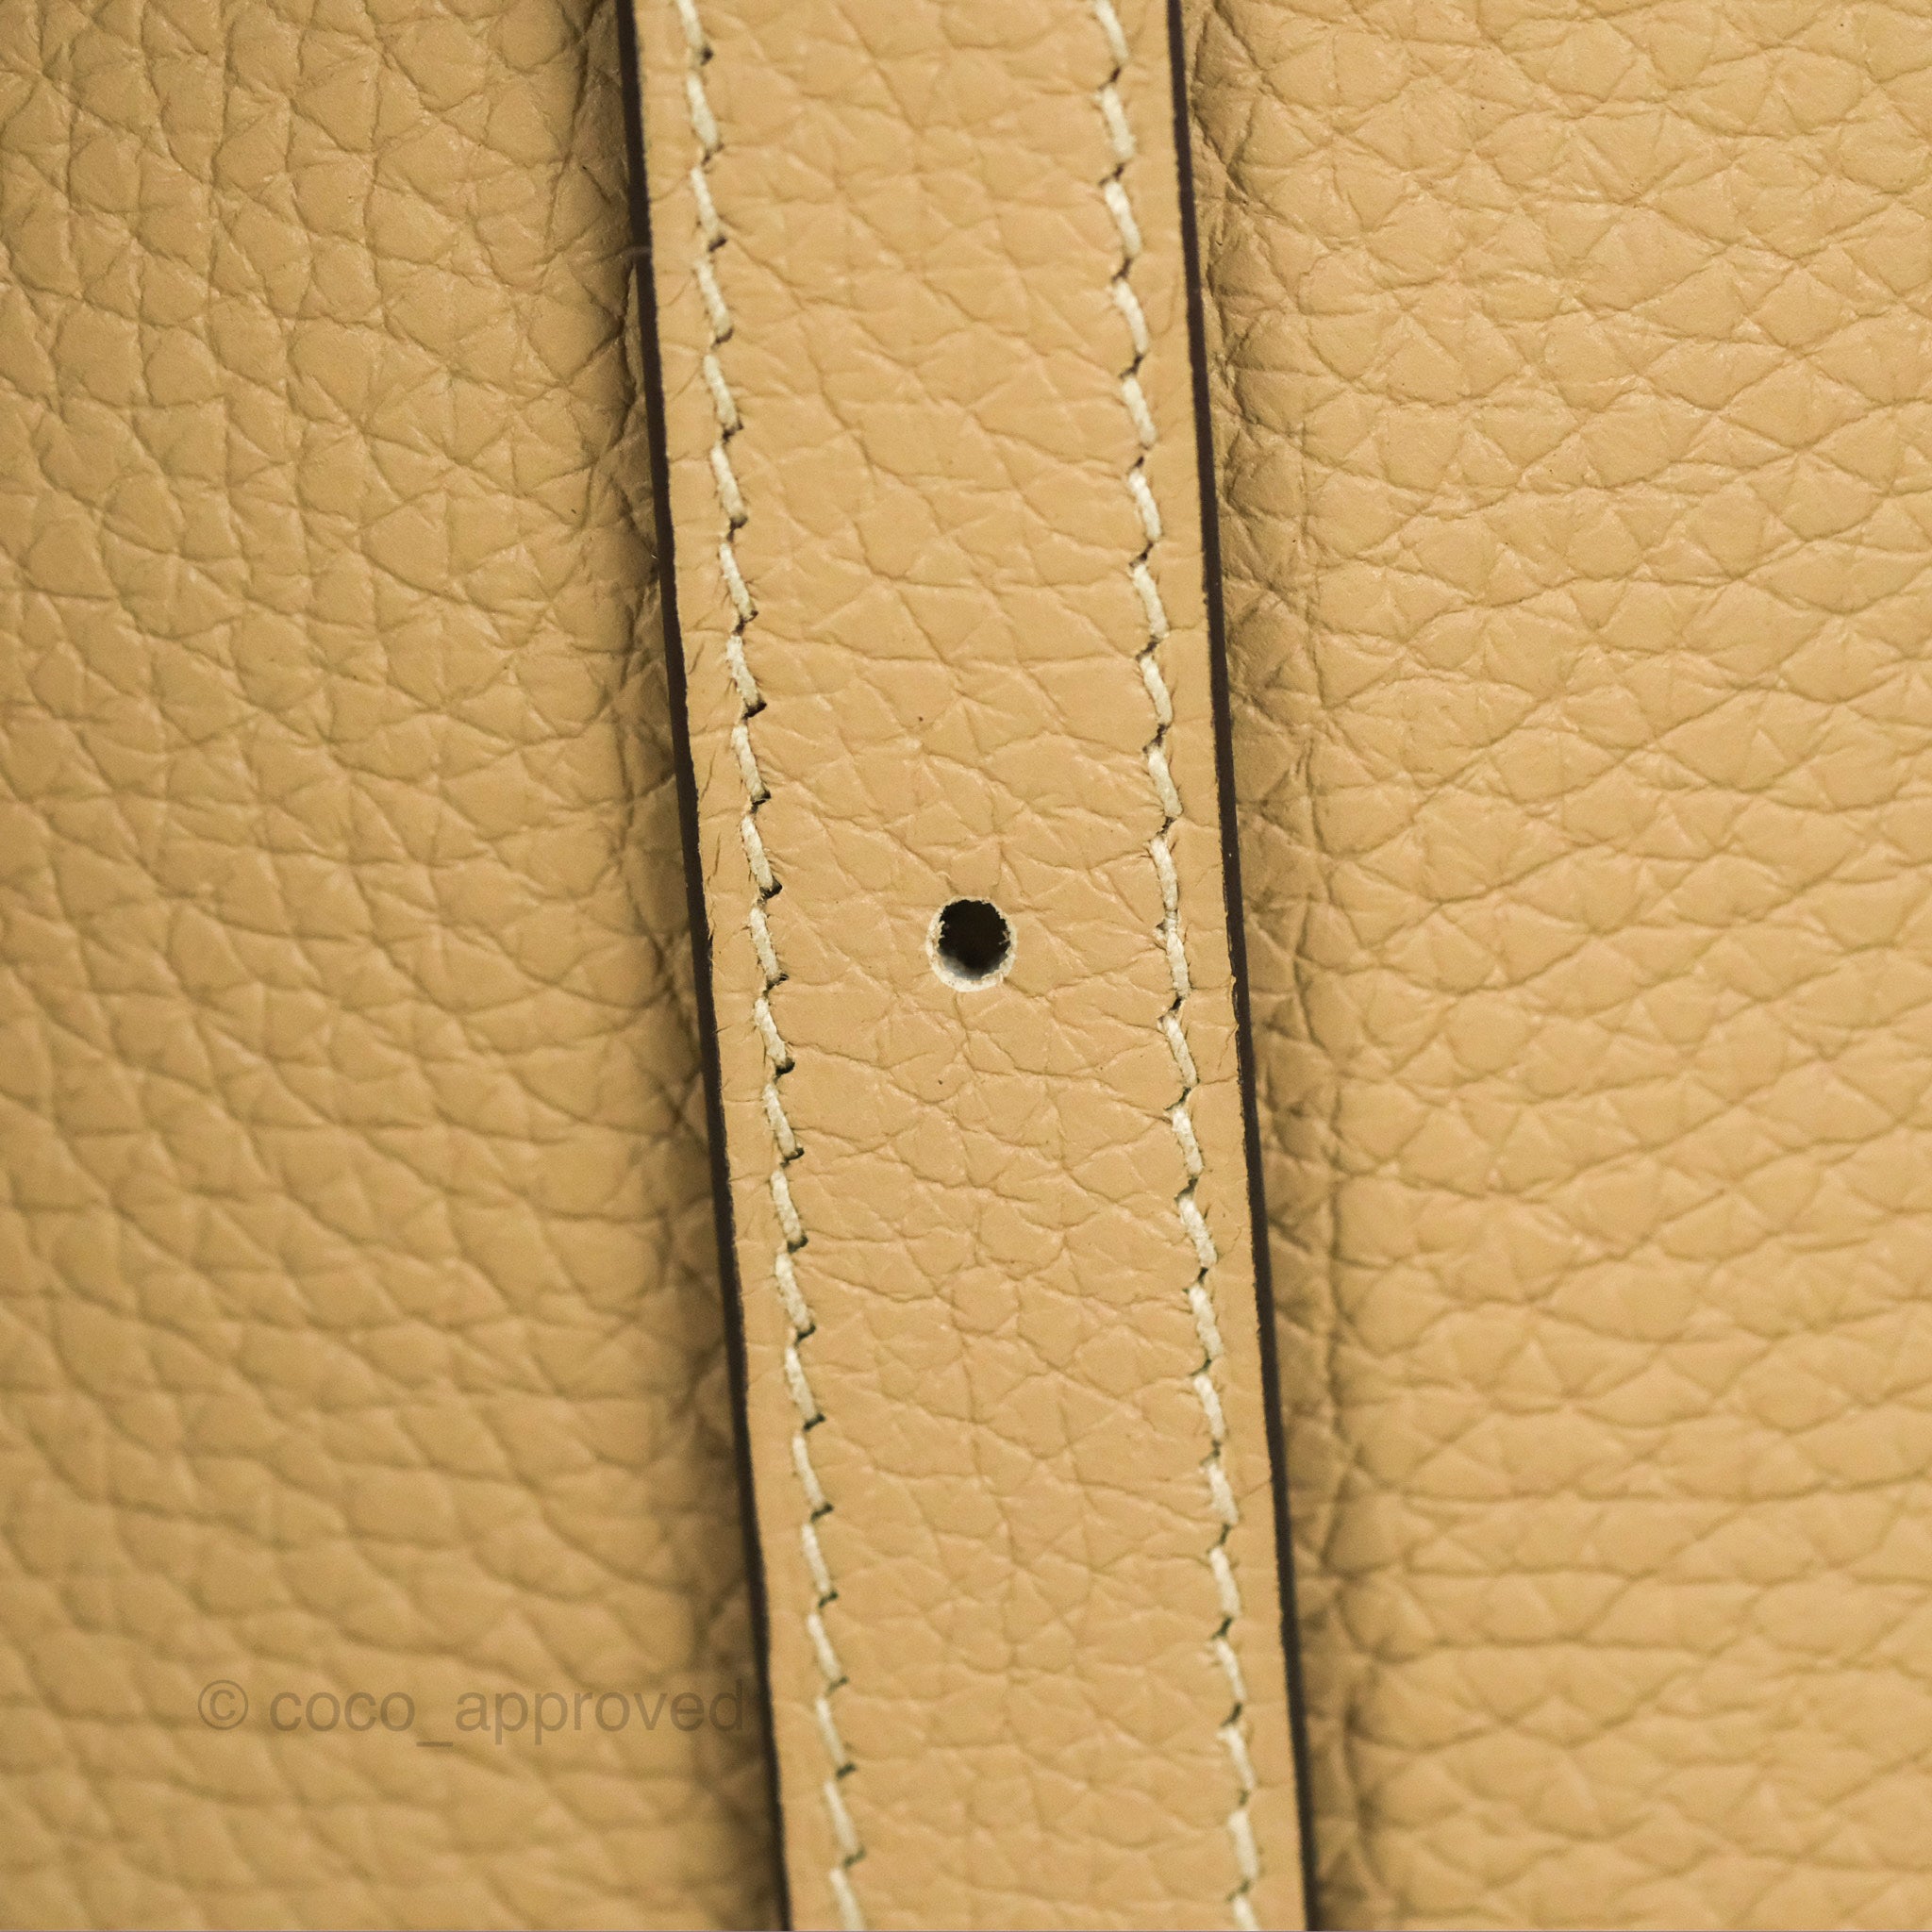 Hermes Halzan 25 Etoupe Bag Gold Hardware Clemence Leather – Mightychic